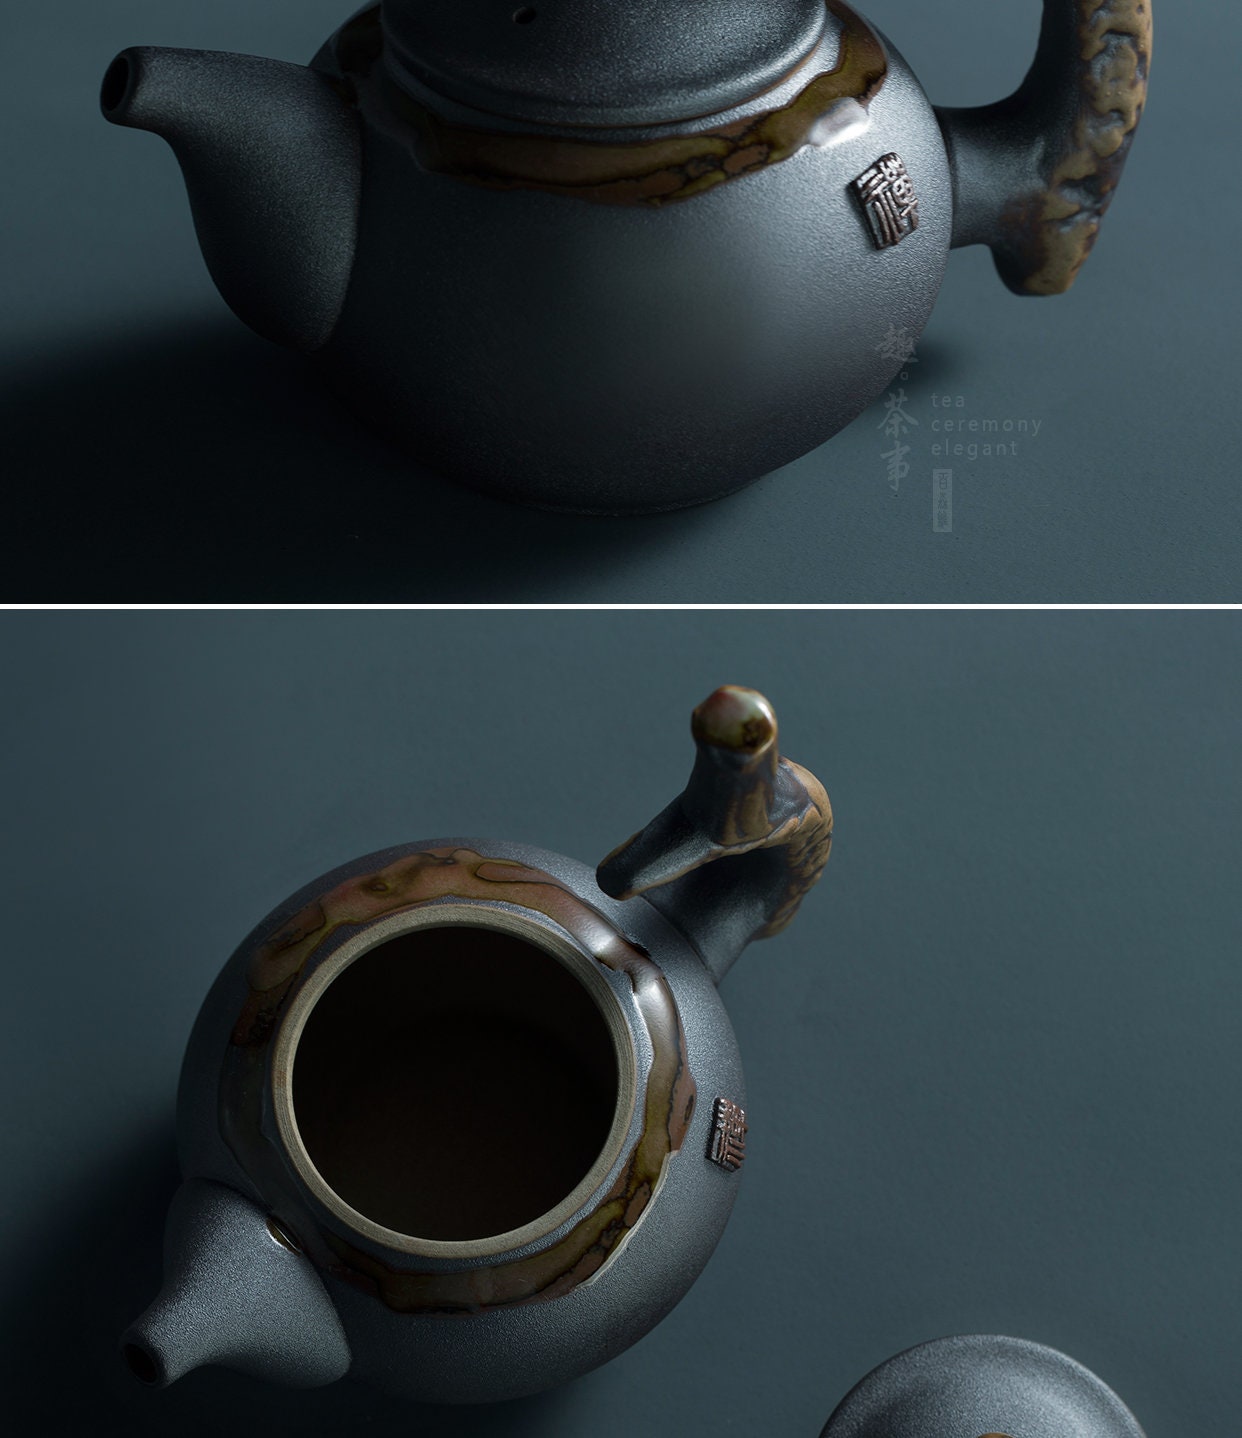 Çay Seramik Çaydan Güdük El Yapımı Çin Çay Pot 240ml - Seramik Çay Dişleri Çay K Yarışı Güdük Geleneksel Çin Çay Pot